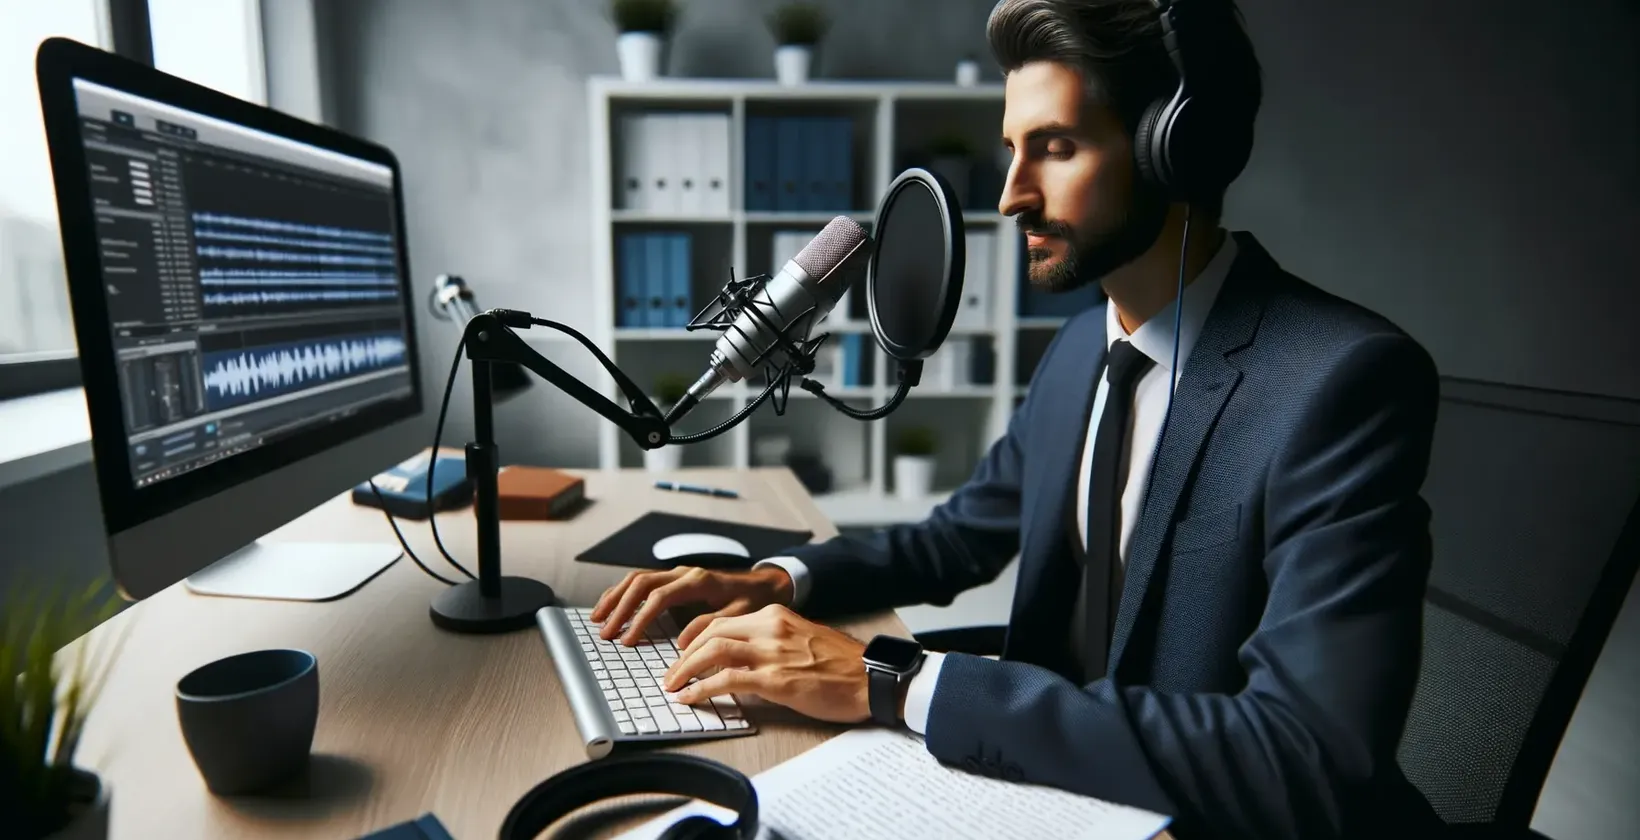 Áudio para texto para fazer anotações, representado por um profissional com fones de ouvido, falando em um microfone de estúdio em um espaço de trabalho moderno